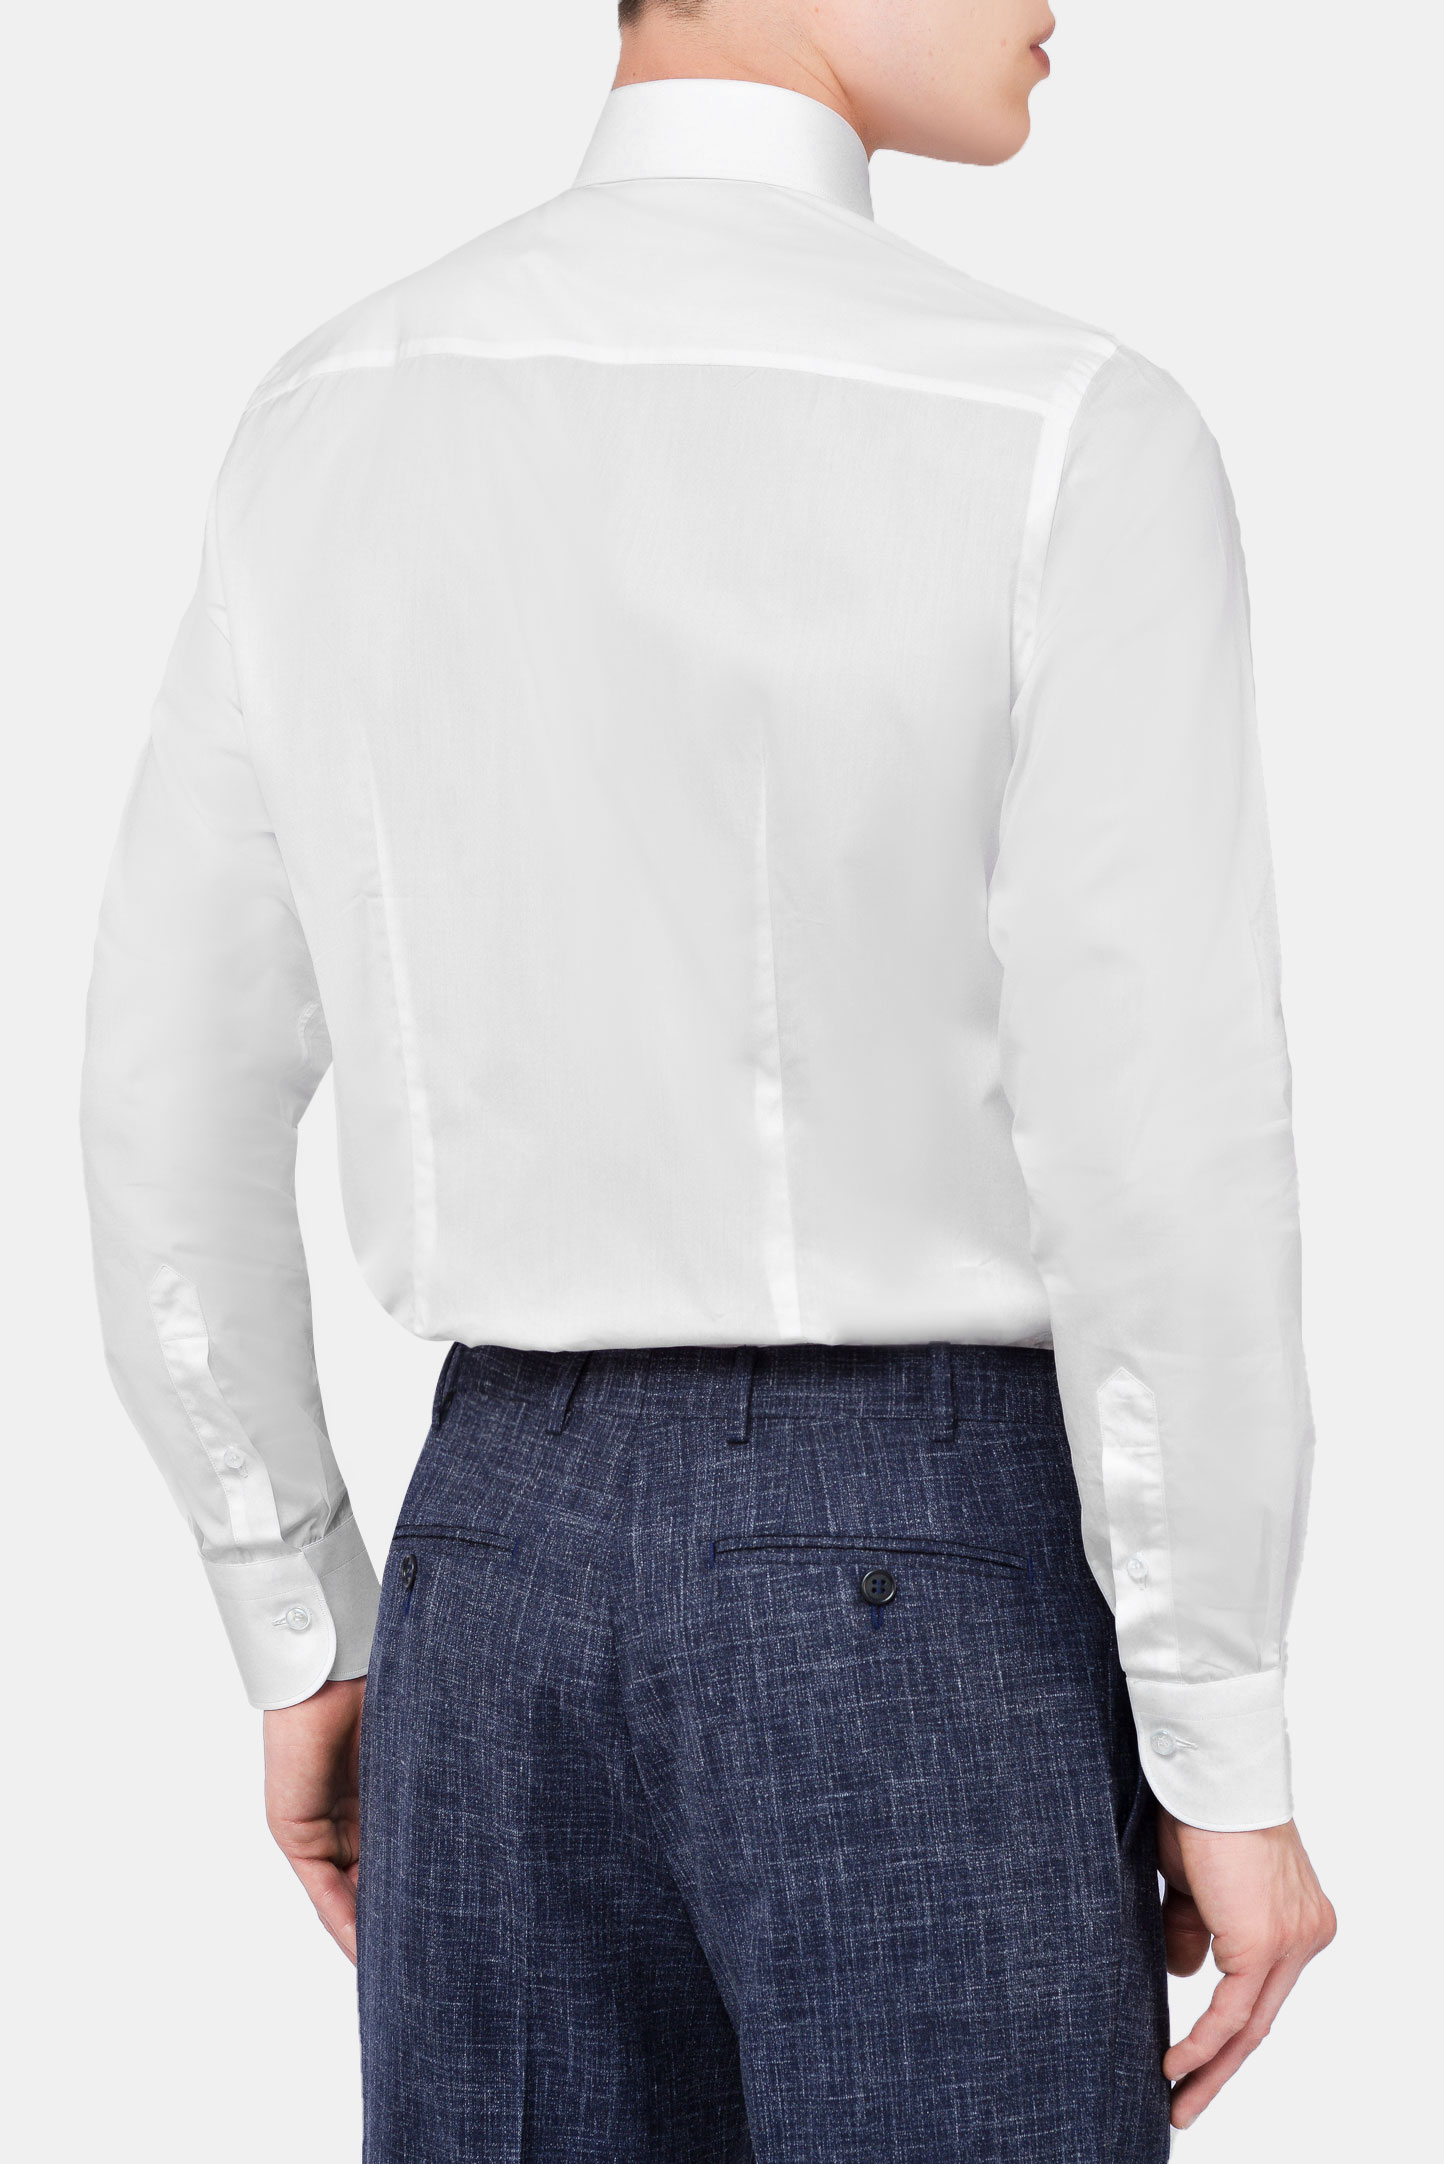 Рубашка BRIONI RCL0BH PZ024, цвет: Белый, Мужской